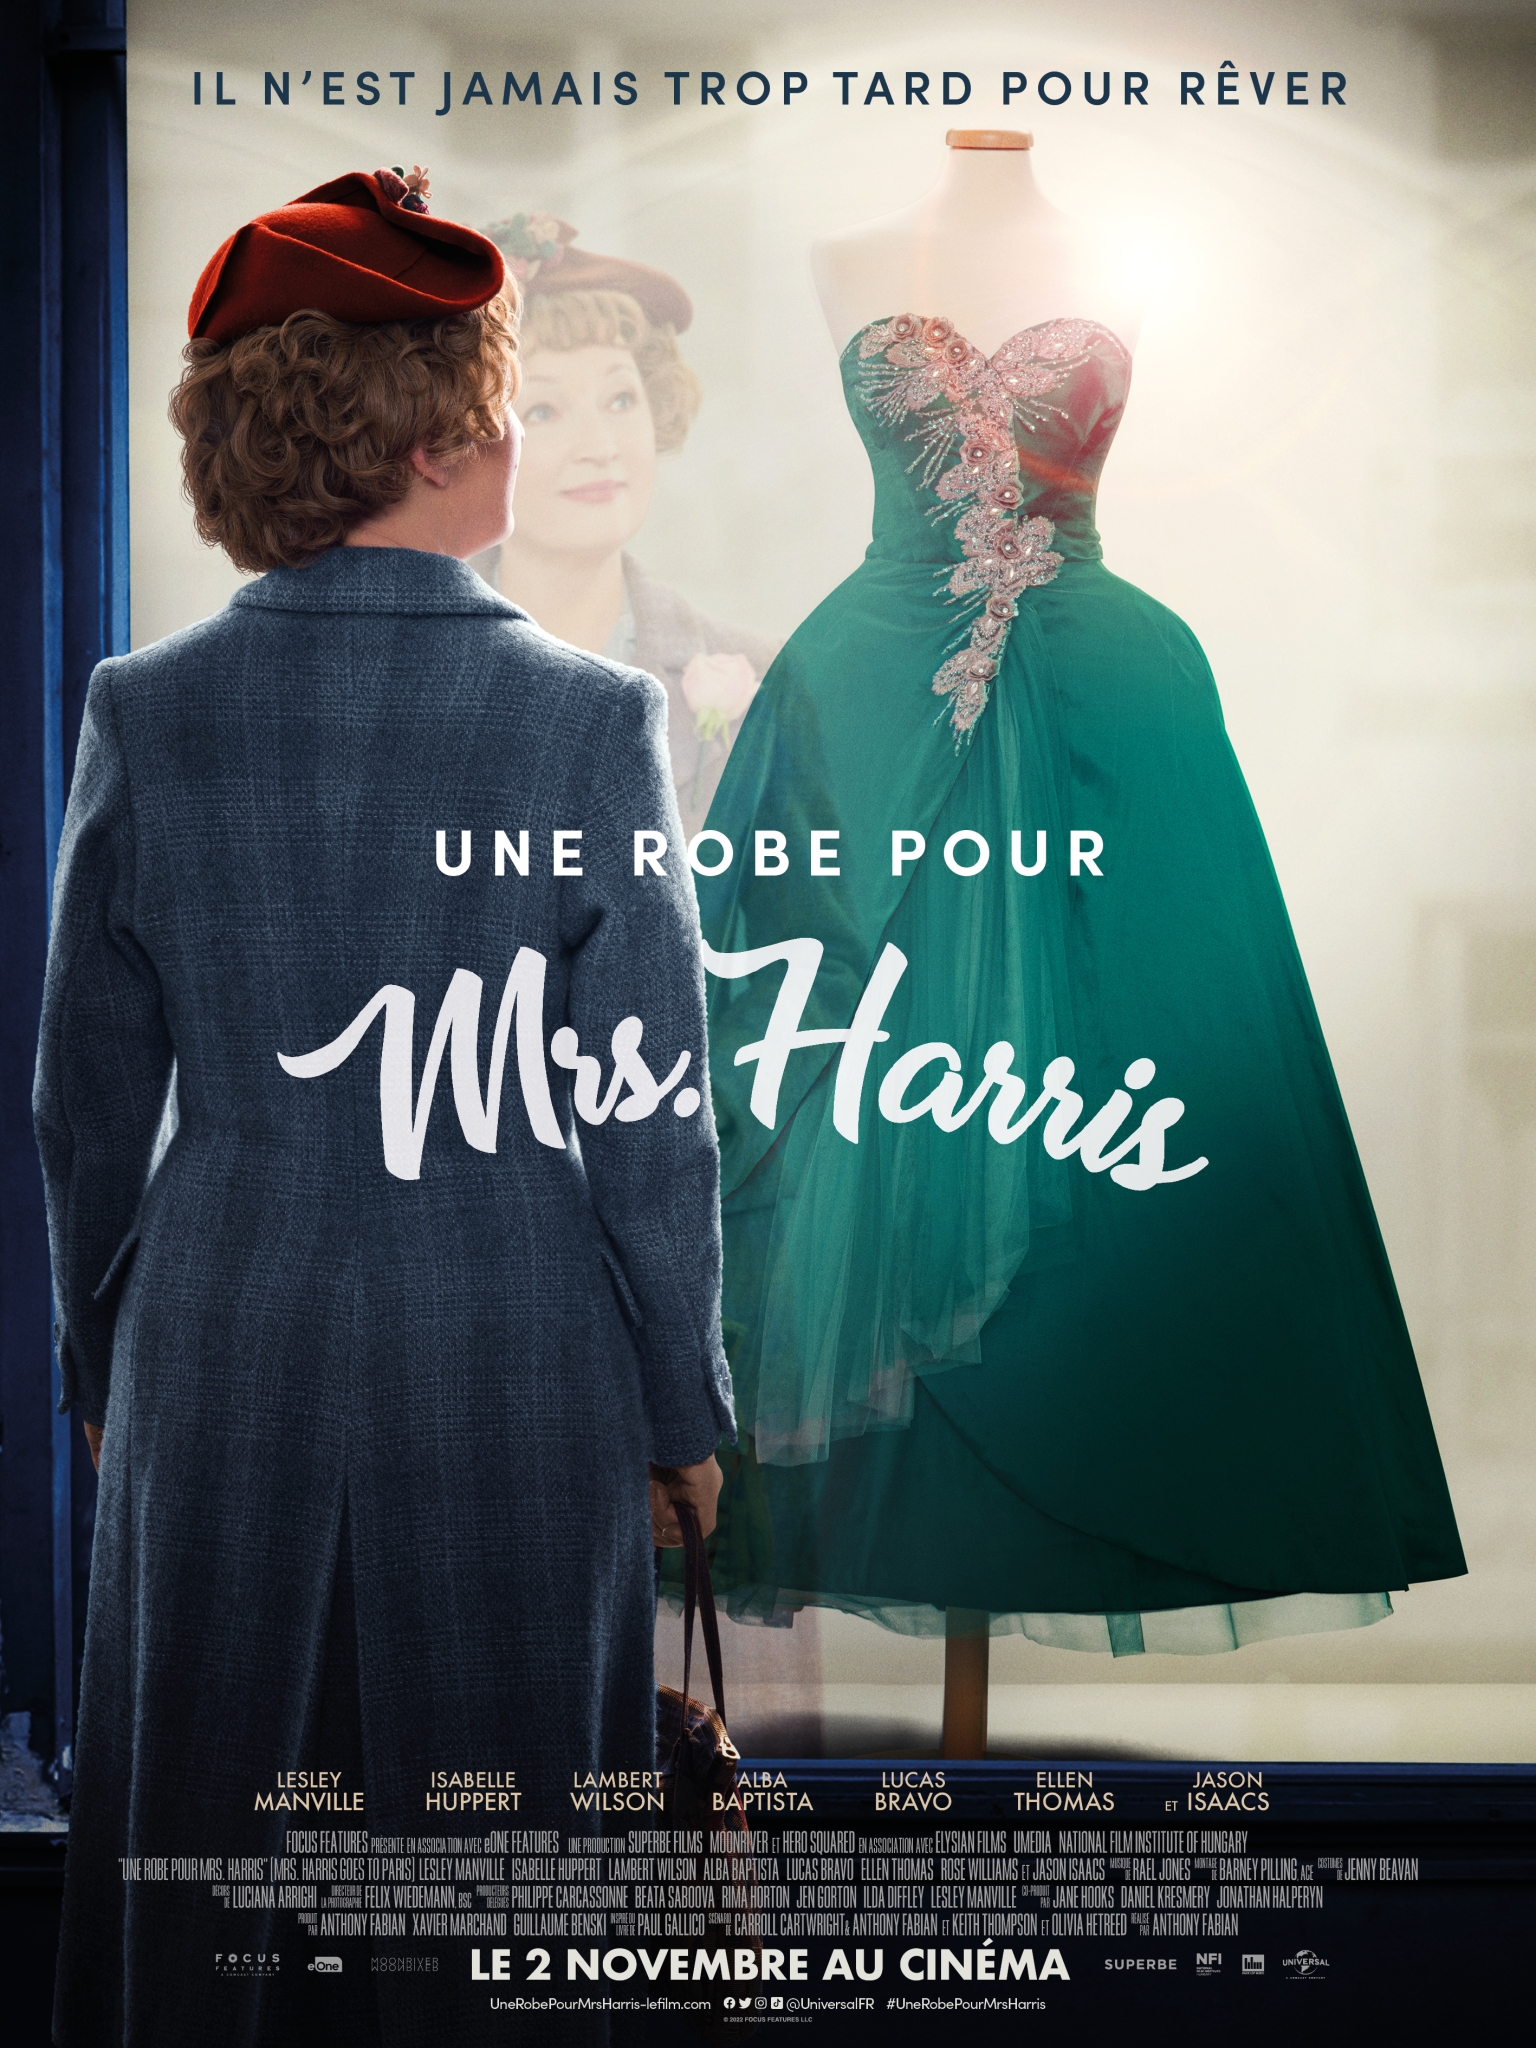 Bande-annonce du film Une robe pour Mrs Harris